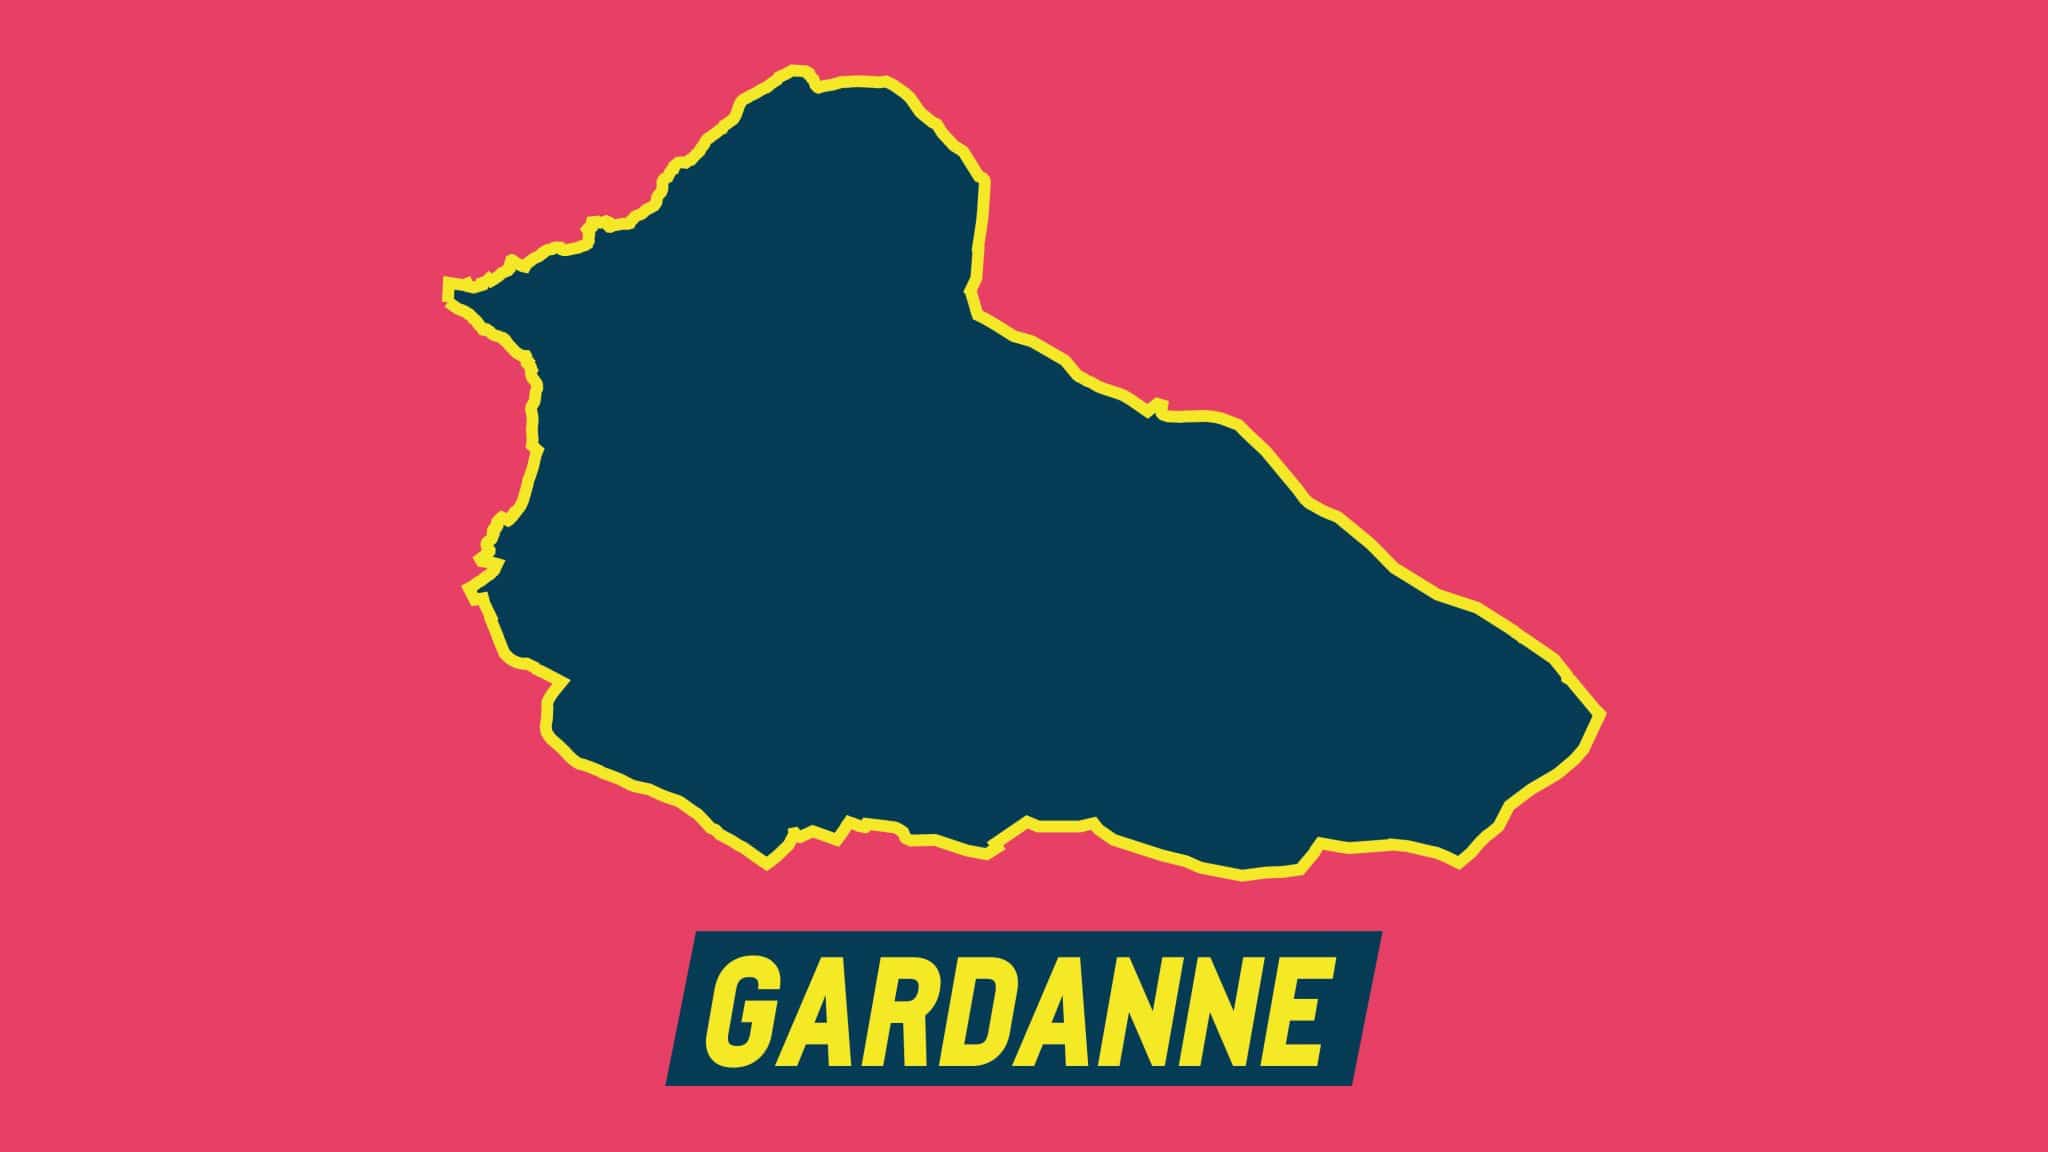 Gardanne